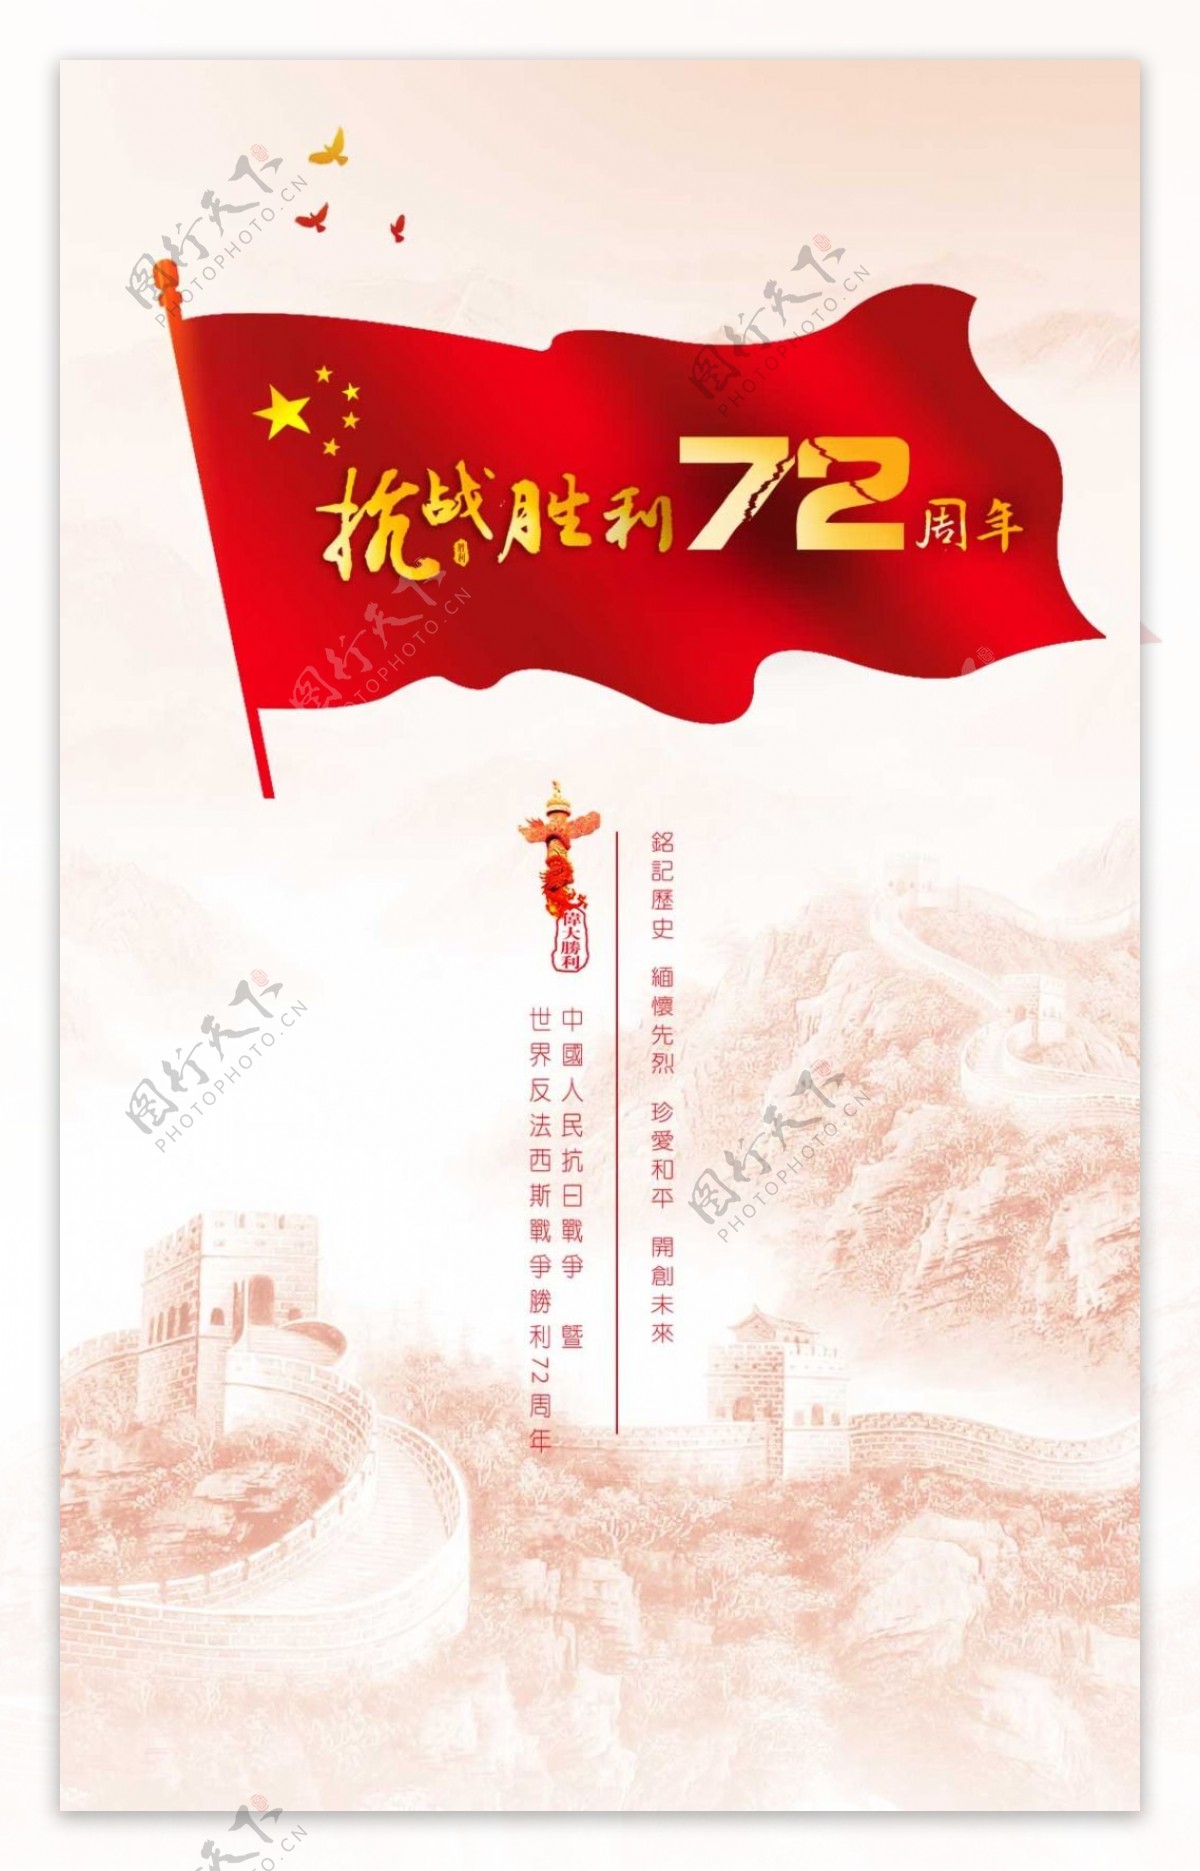 抗战胜利72周年宣传海报设计